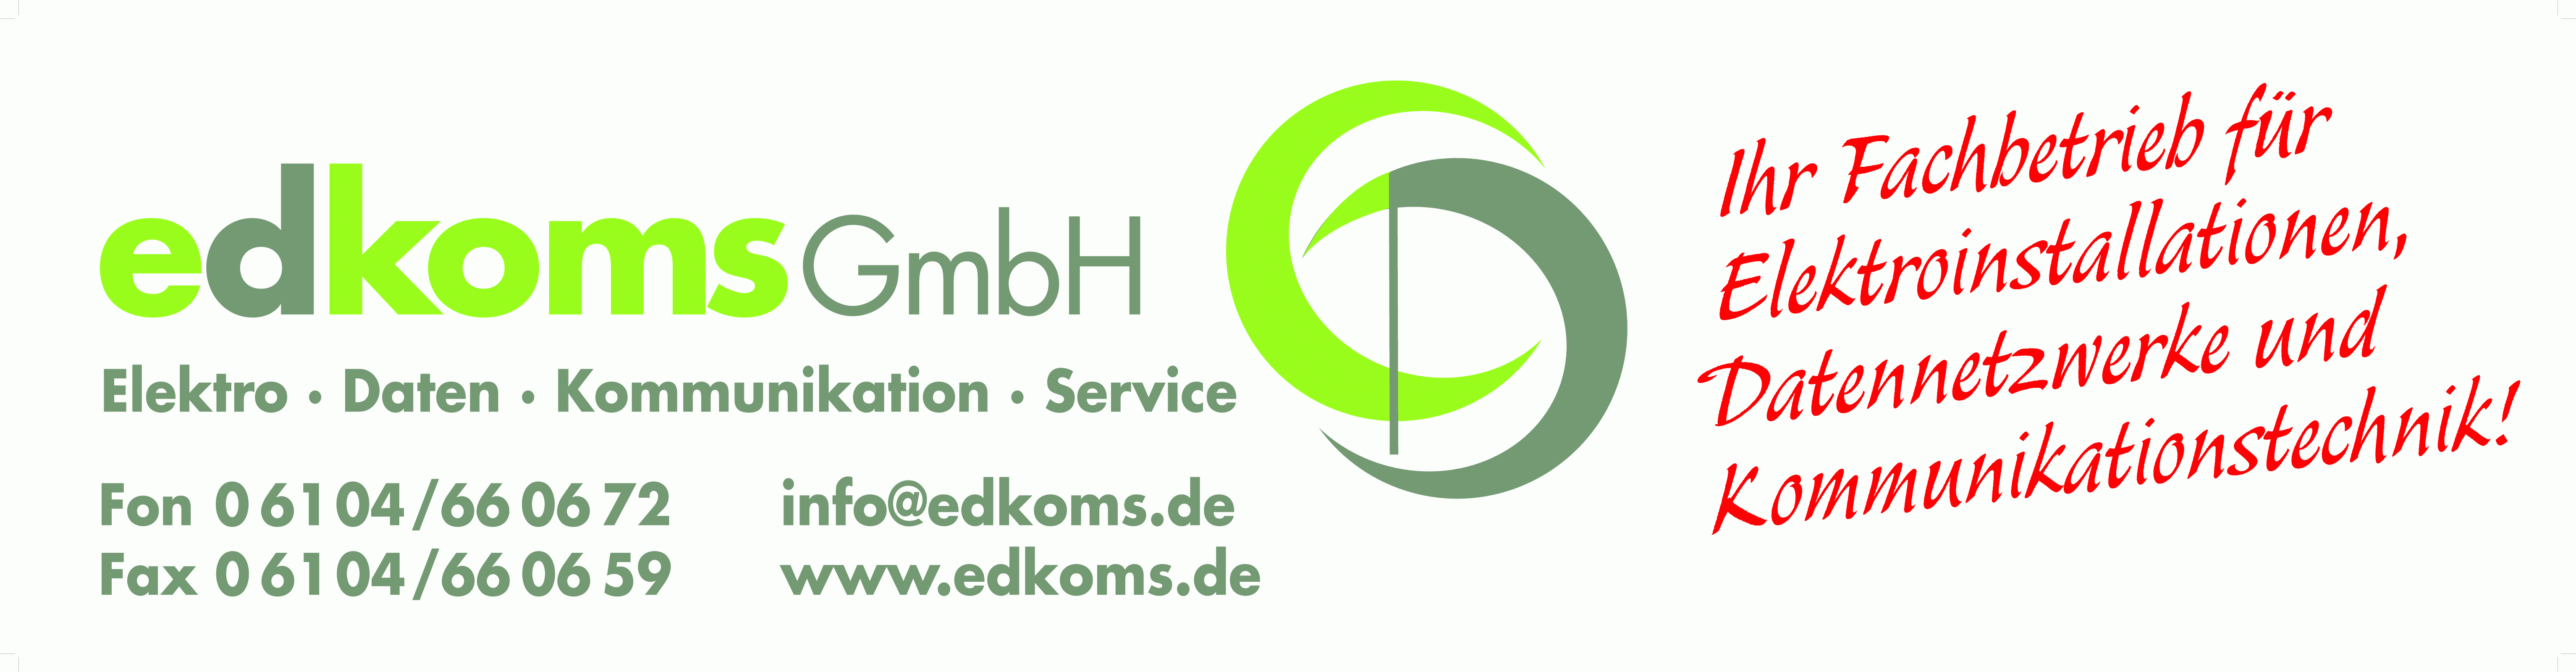 Edkoms GmbH